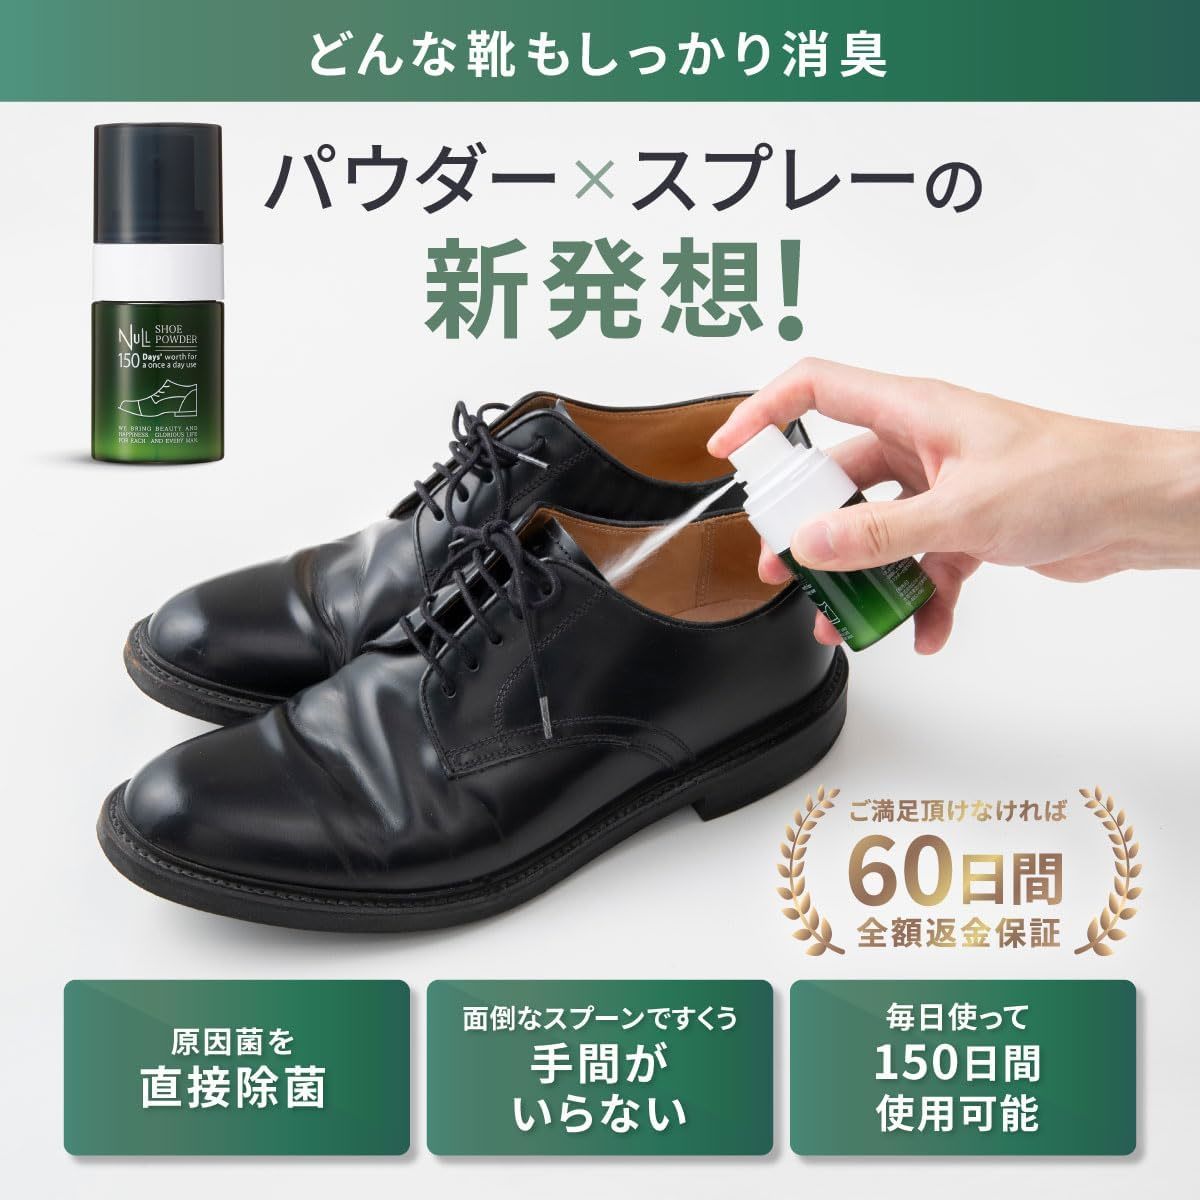 消臭粉×1 NULL シューパウダー 靴 消臭 足の臭い対策 スプレータイプの靴用 消臭粉 無香料 17g 150日分_画像2